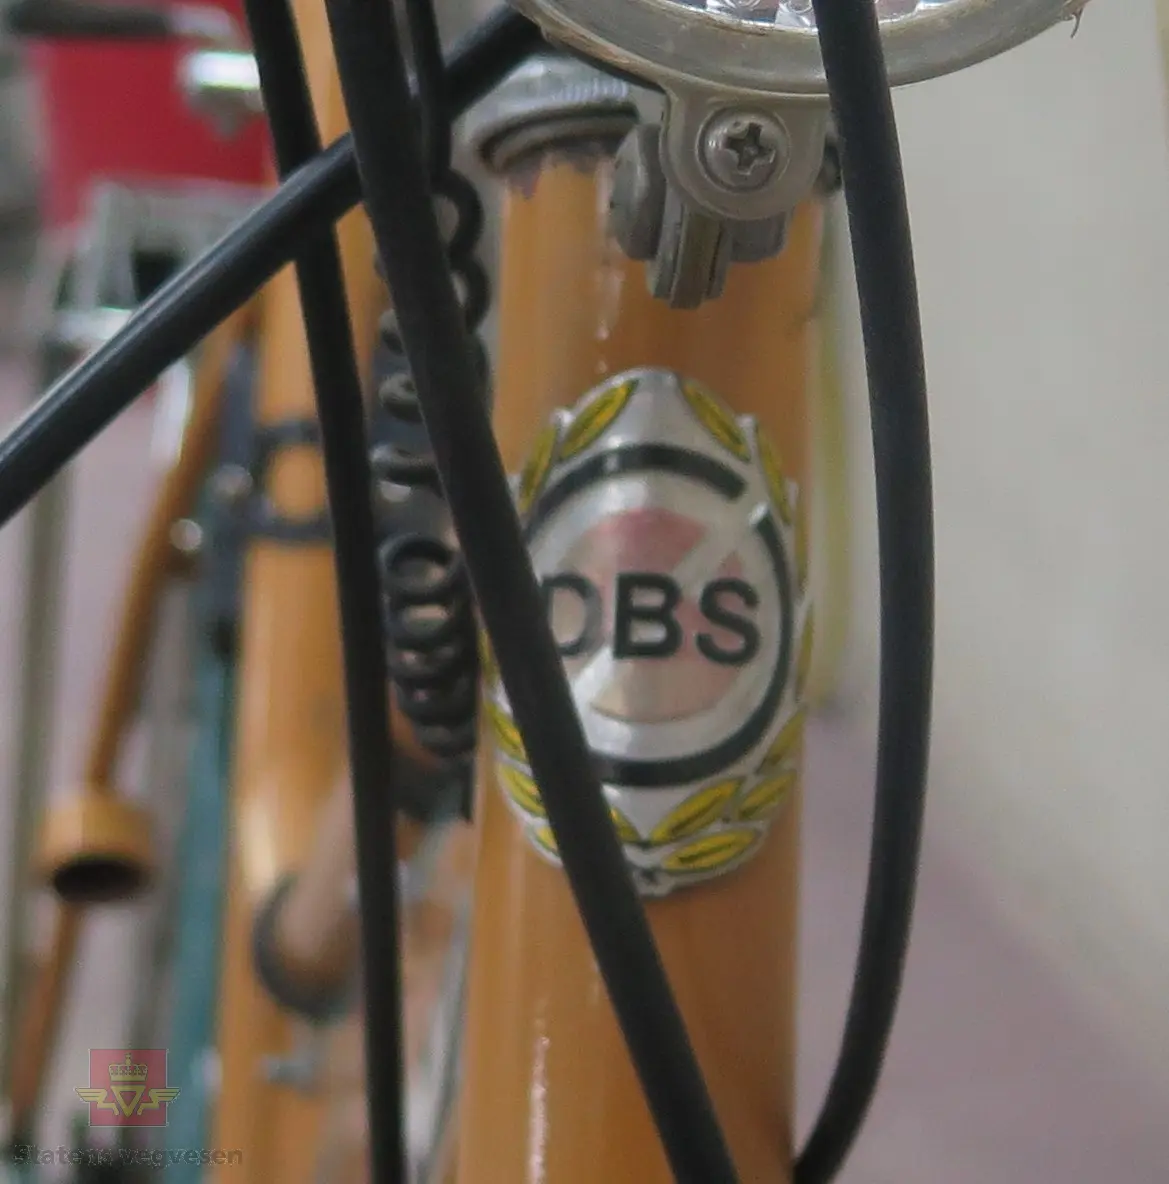 DBS damesykkel. Sykkelen har oransje ramme og grønn kjedekasse og skjermer. Utstyrt med lykt foran, og speedometer. Har 5 gir (type Torpedo).